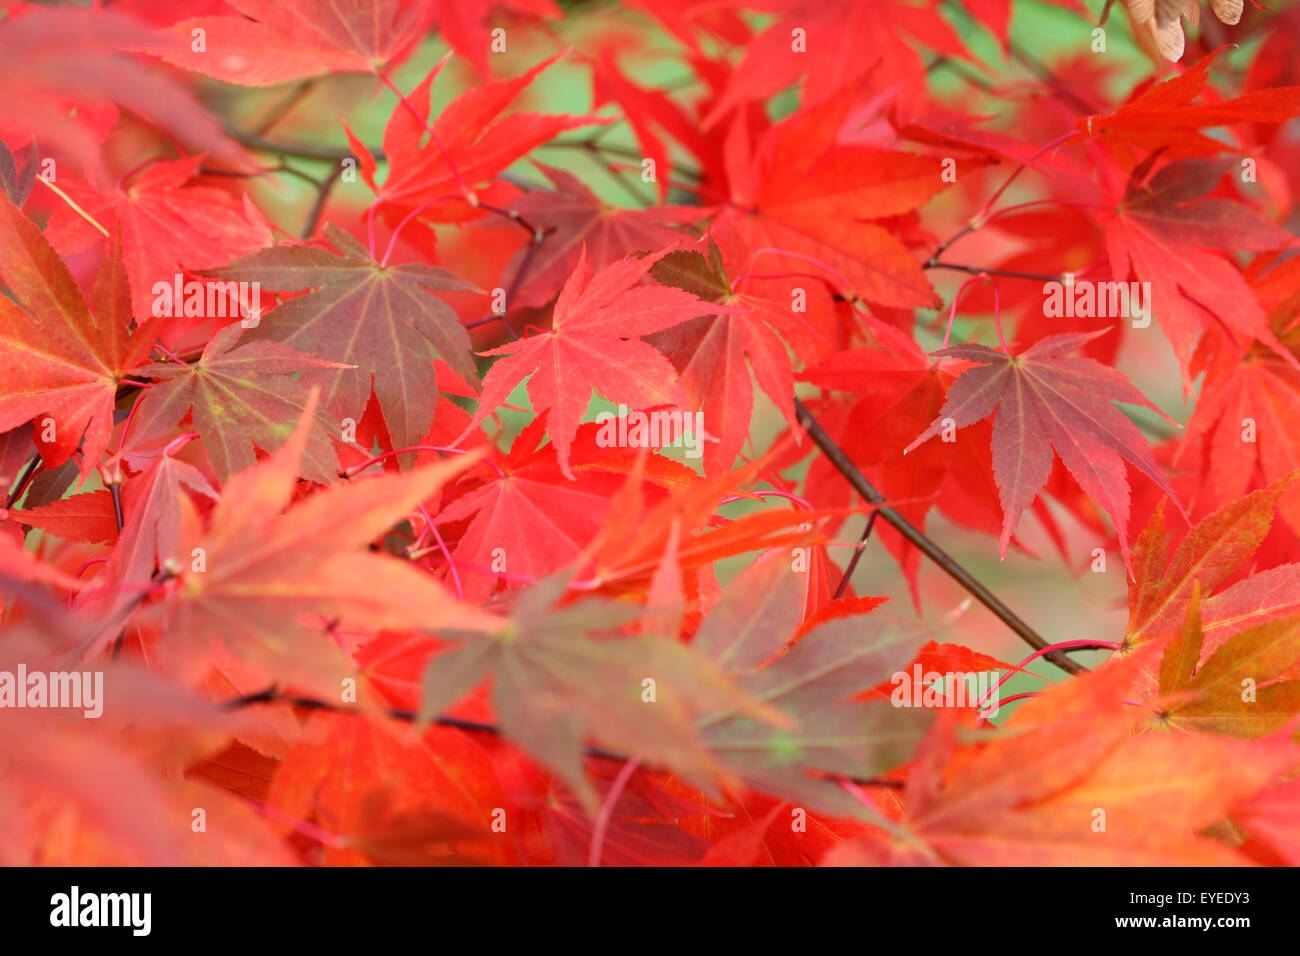 schöne Ahornblätter drehen Farbe im Herbst © Jane Ann Butler Fotografie JABP1289 Stockfoto